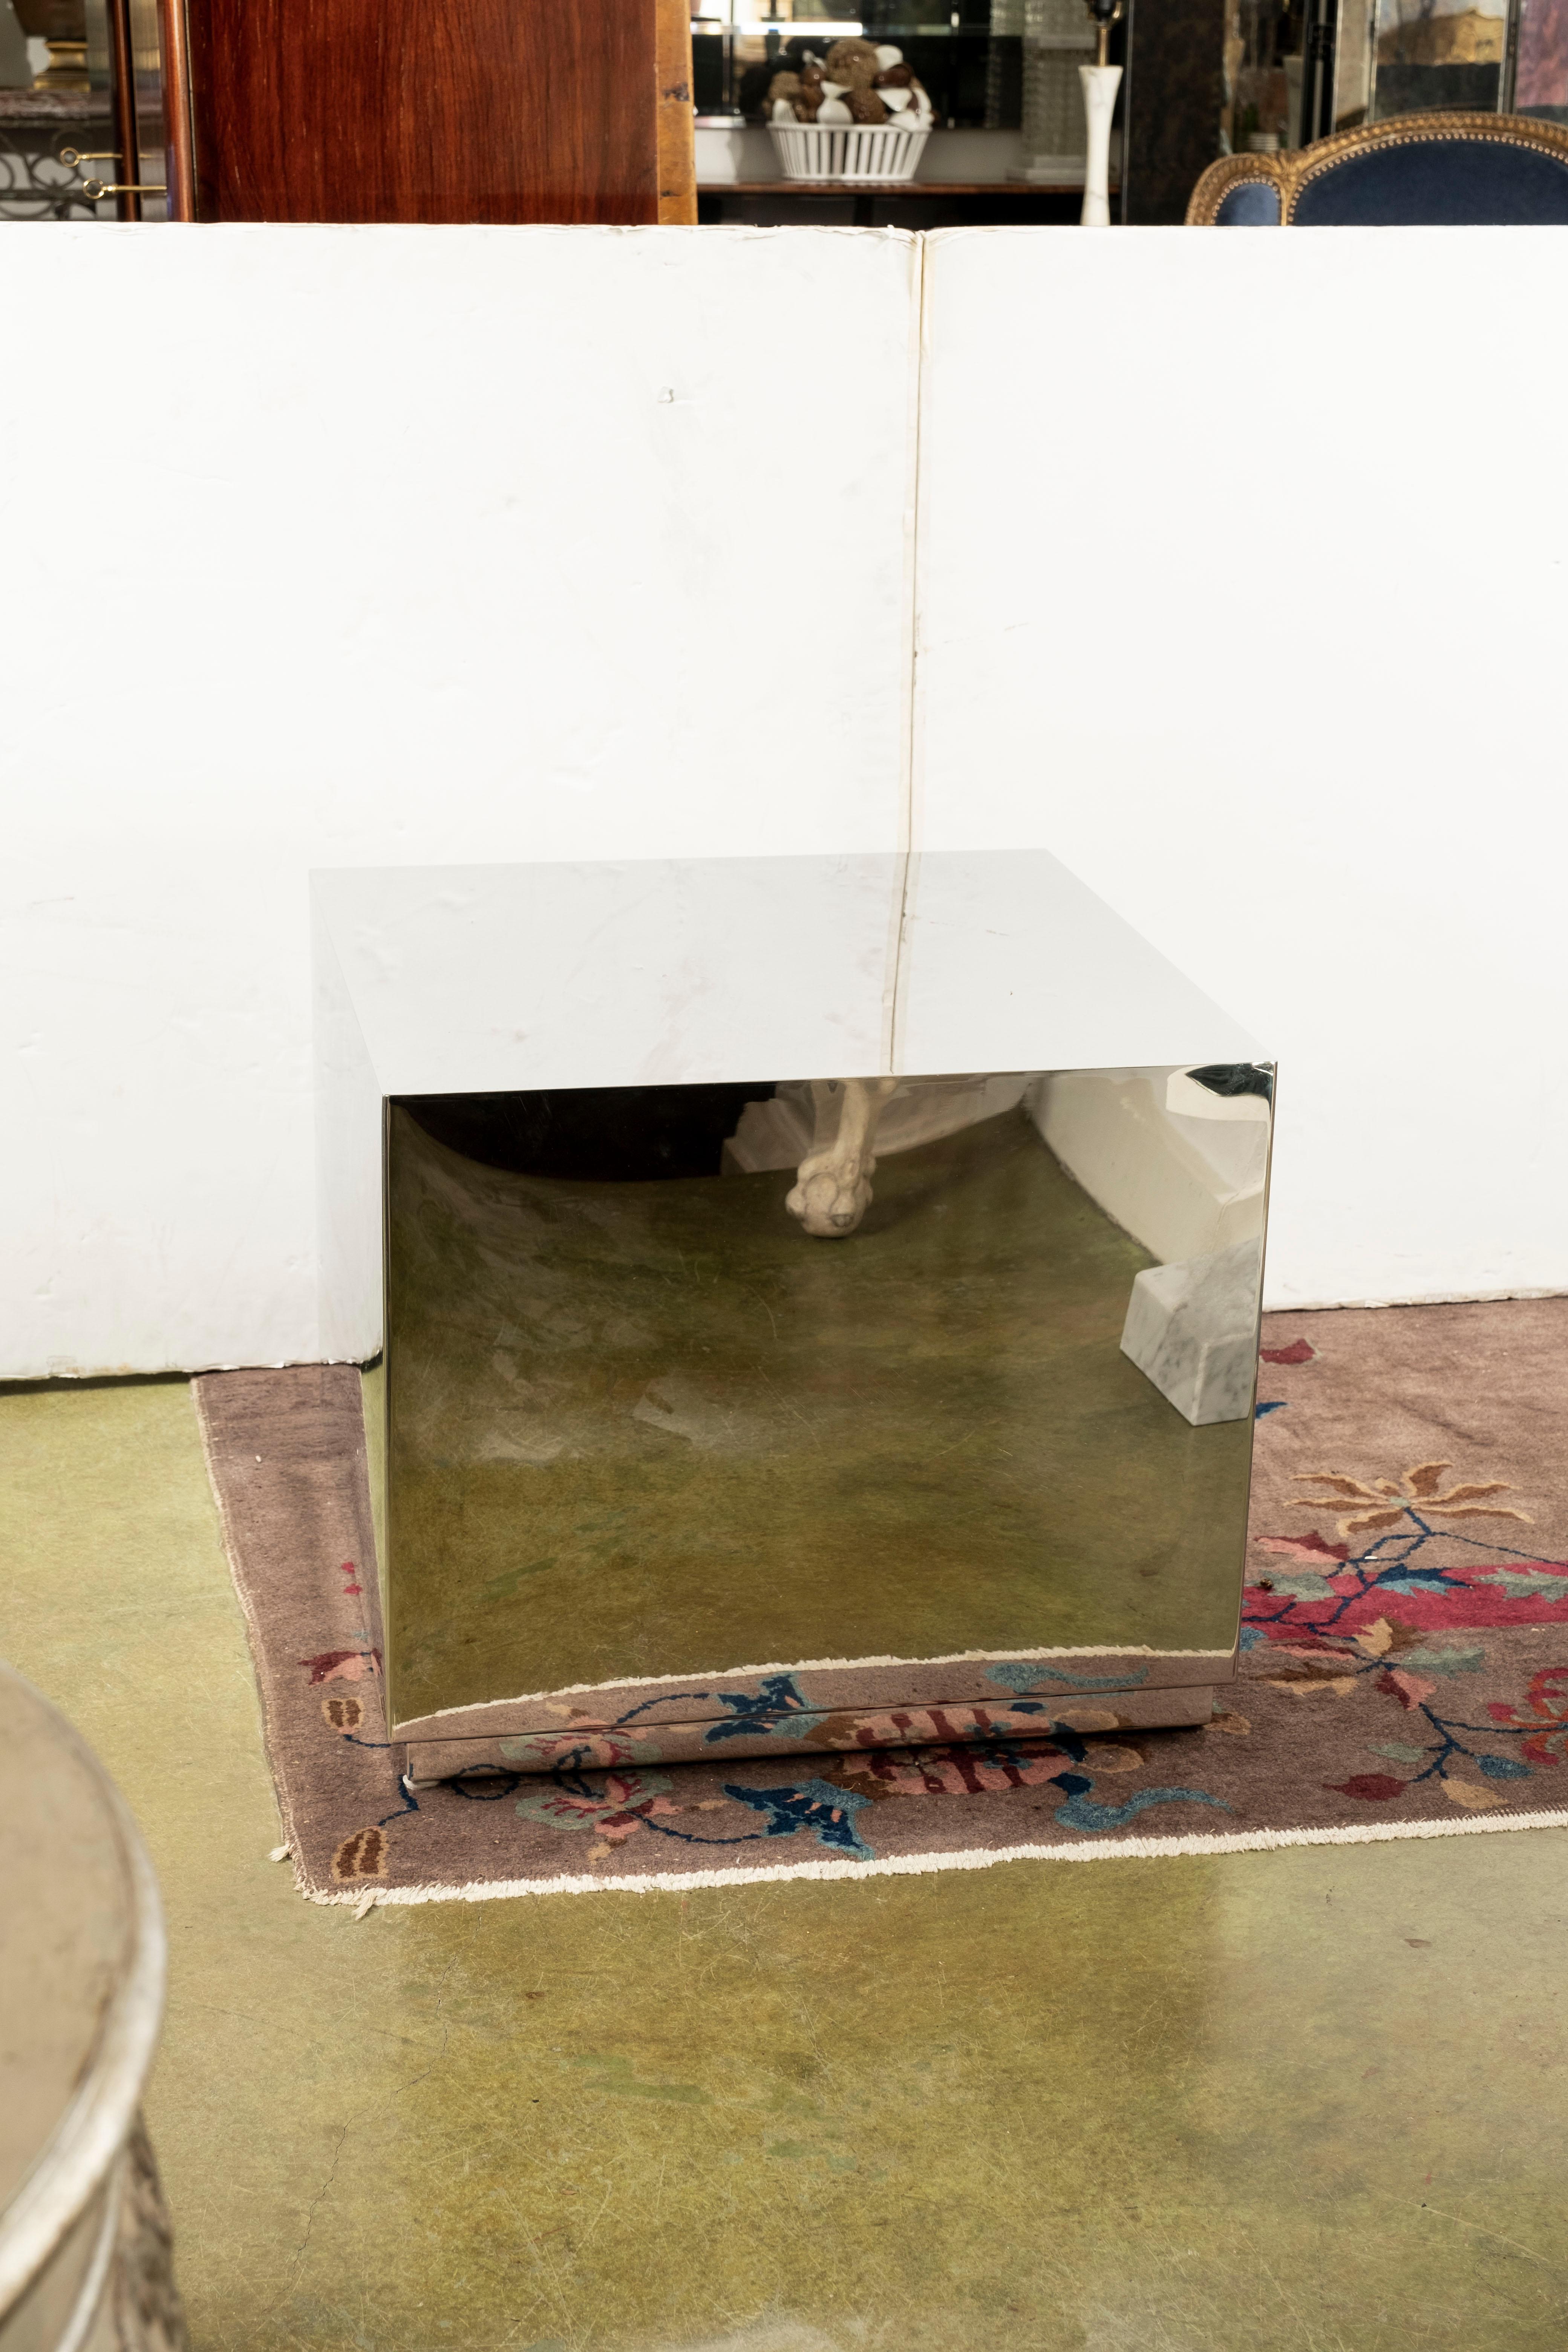 Table cubique postmoderne italienne en acier à finition miroir. Cette étonnante table cubique carrée en acier inoxydable de style Paul Evans, table d'appoint ou piédestal, repose sur un socle de 1,75 pouce avec une belle finition miroir.
Parfait